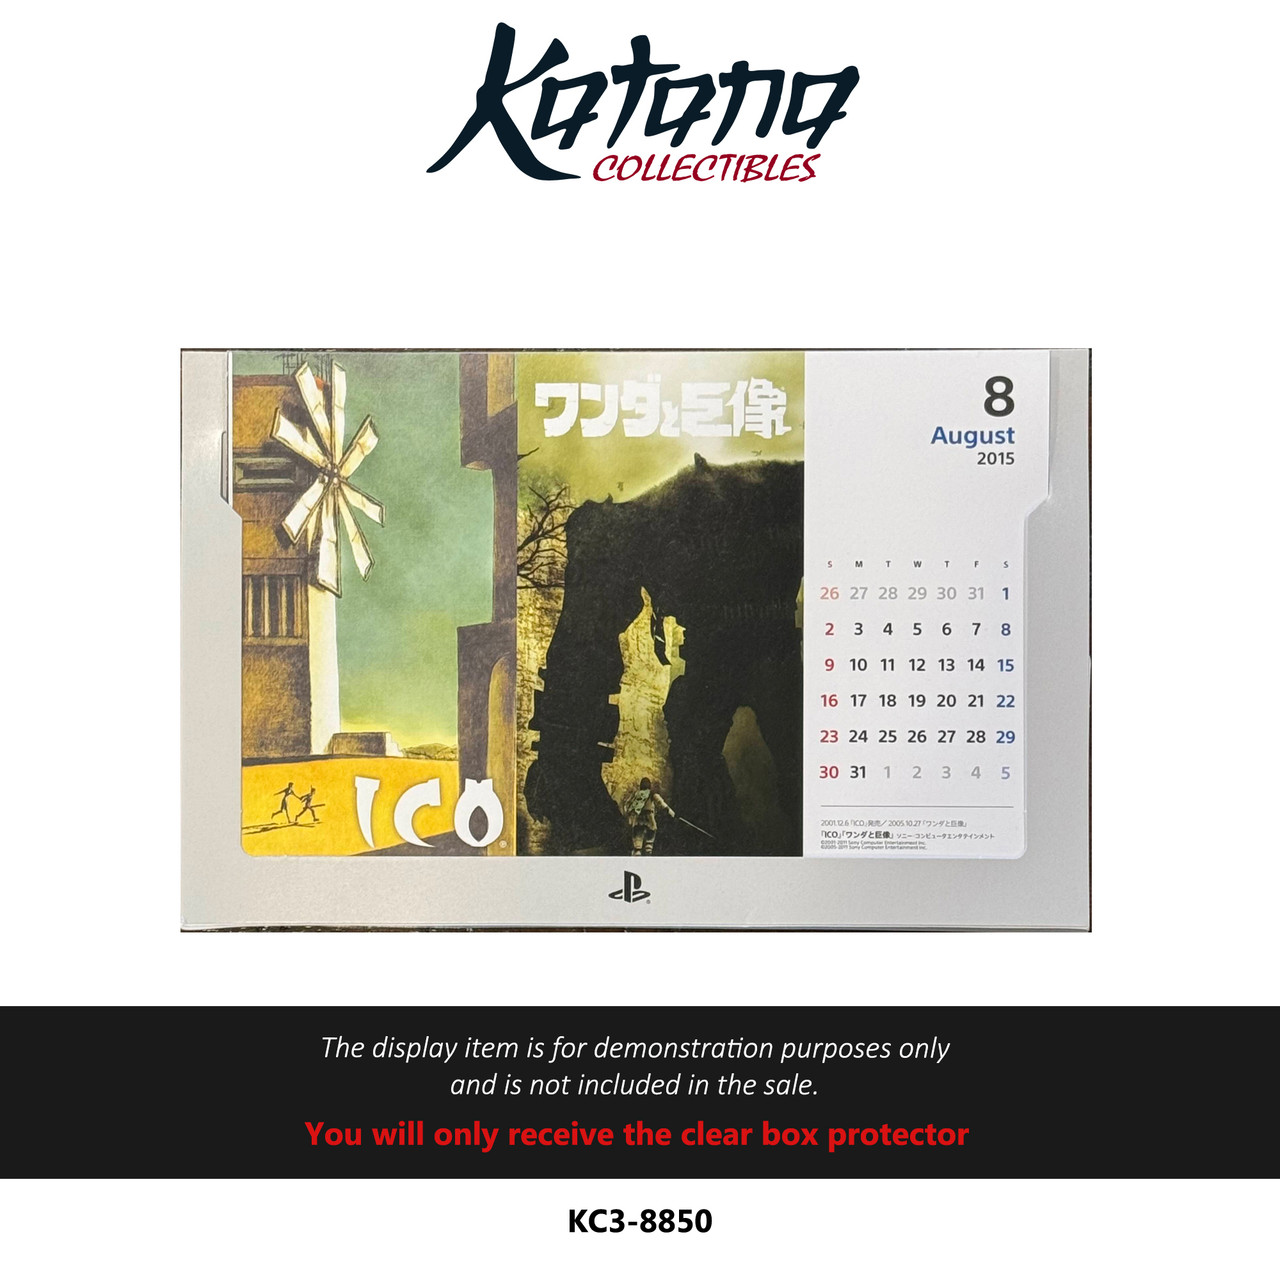 Katana Collectibles Protector For Ico Ps3 Calendar